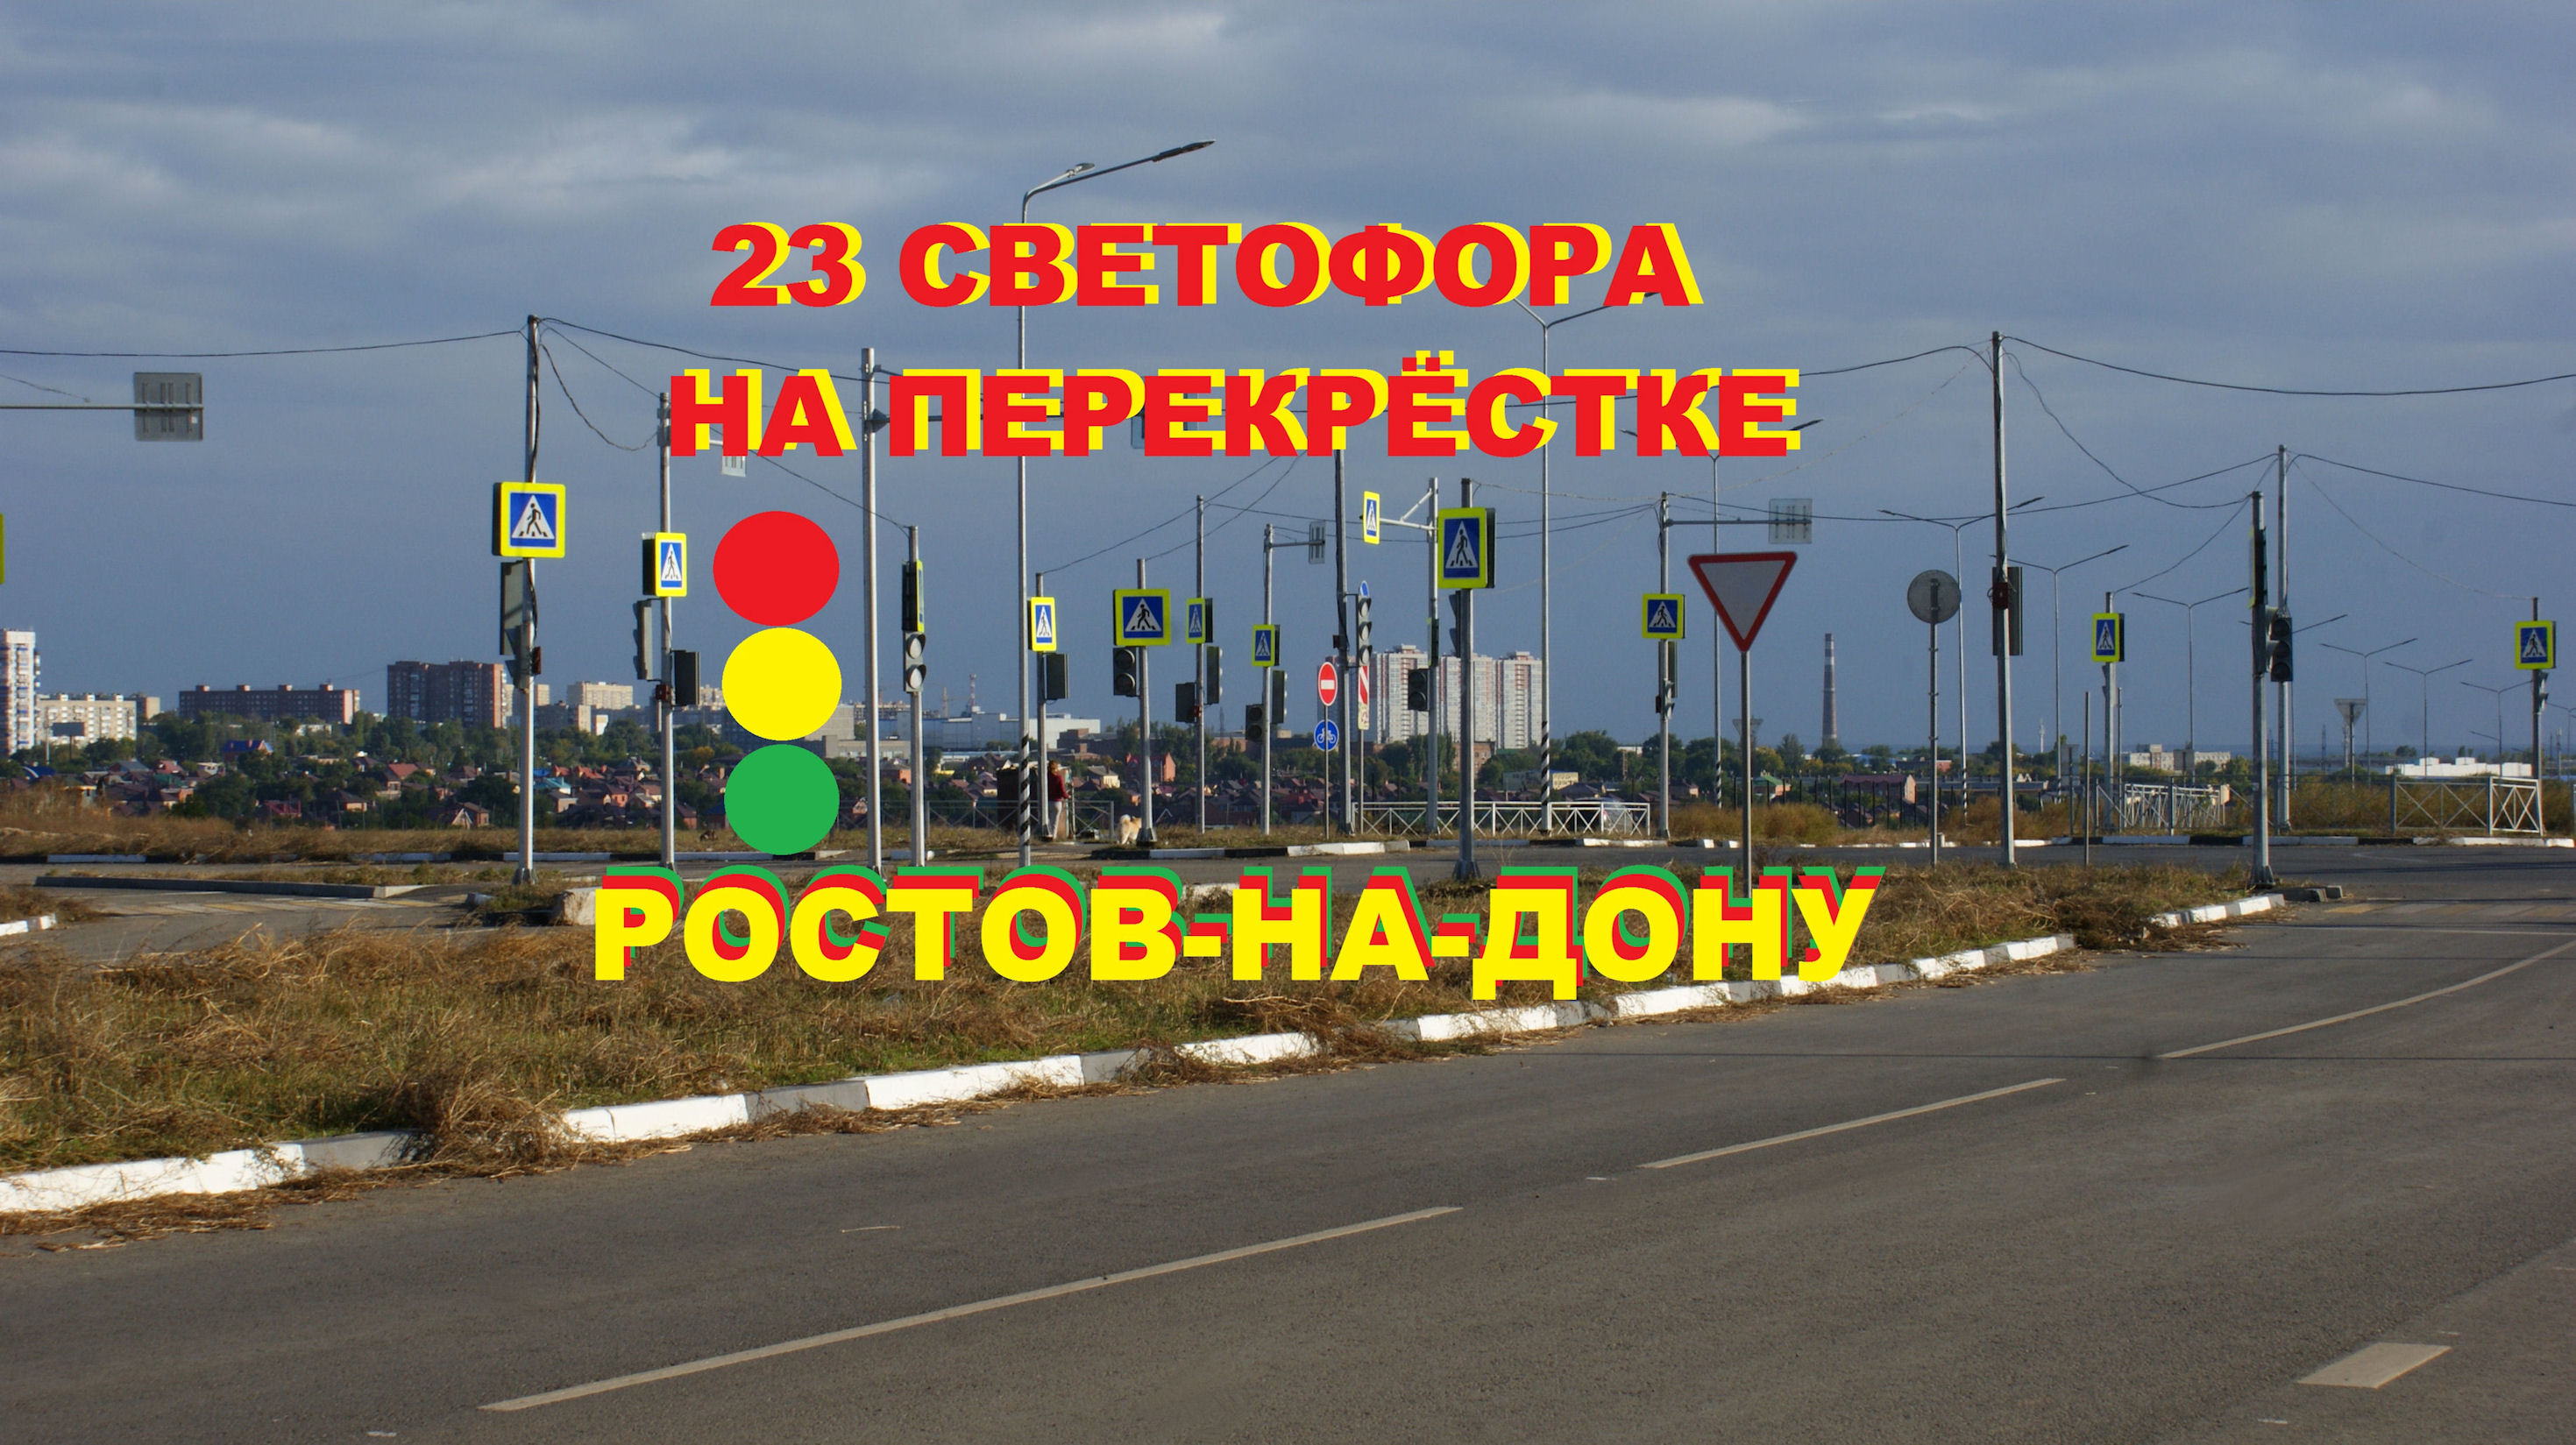 Лес светофоров в Ростове-на-Дону: 23 светофора на перекрёстке